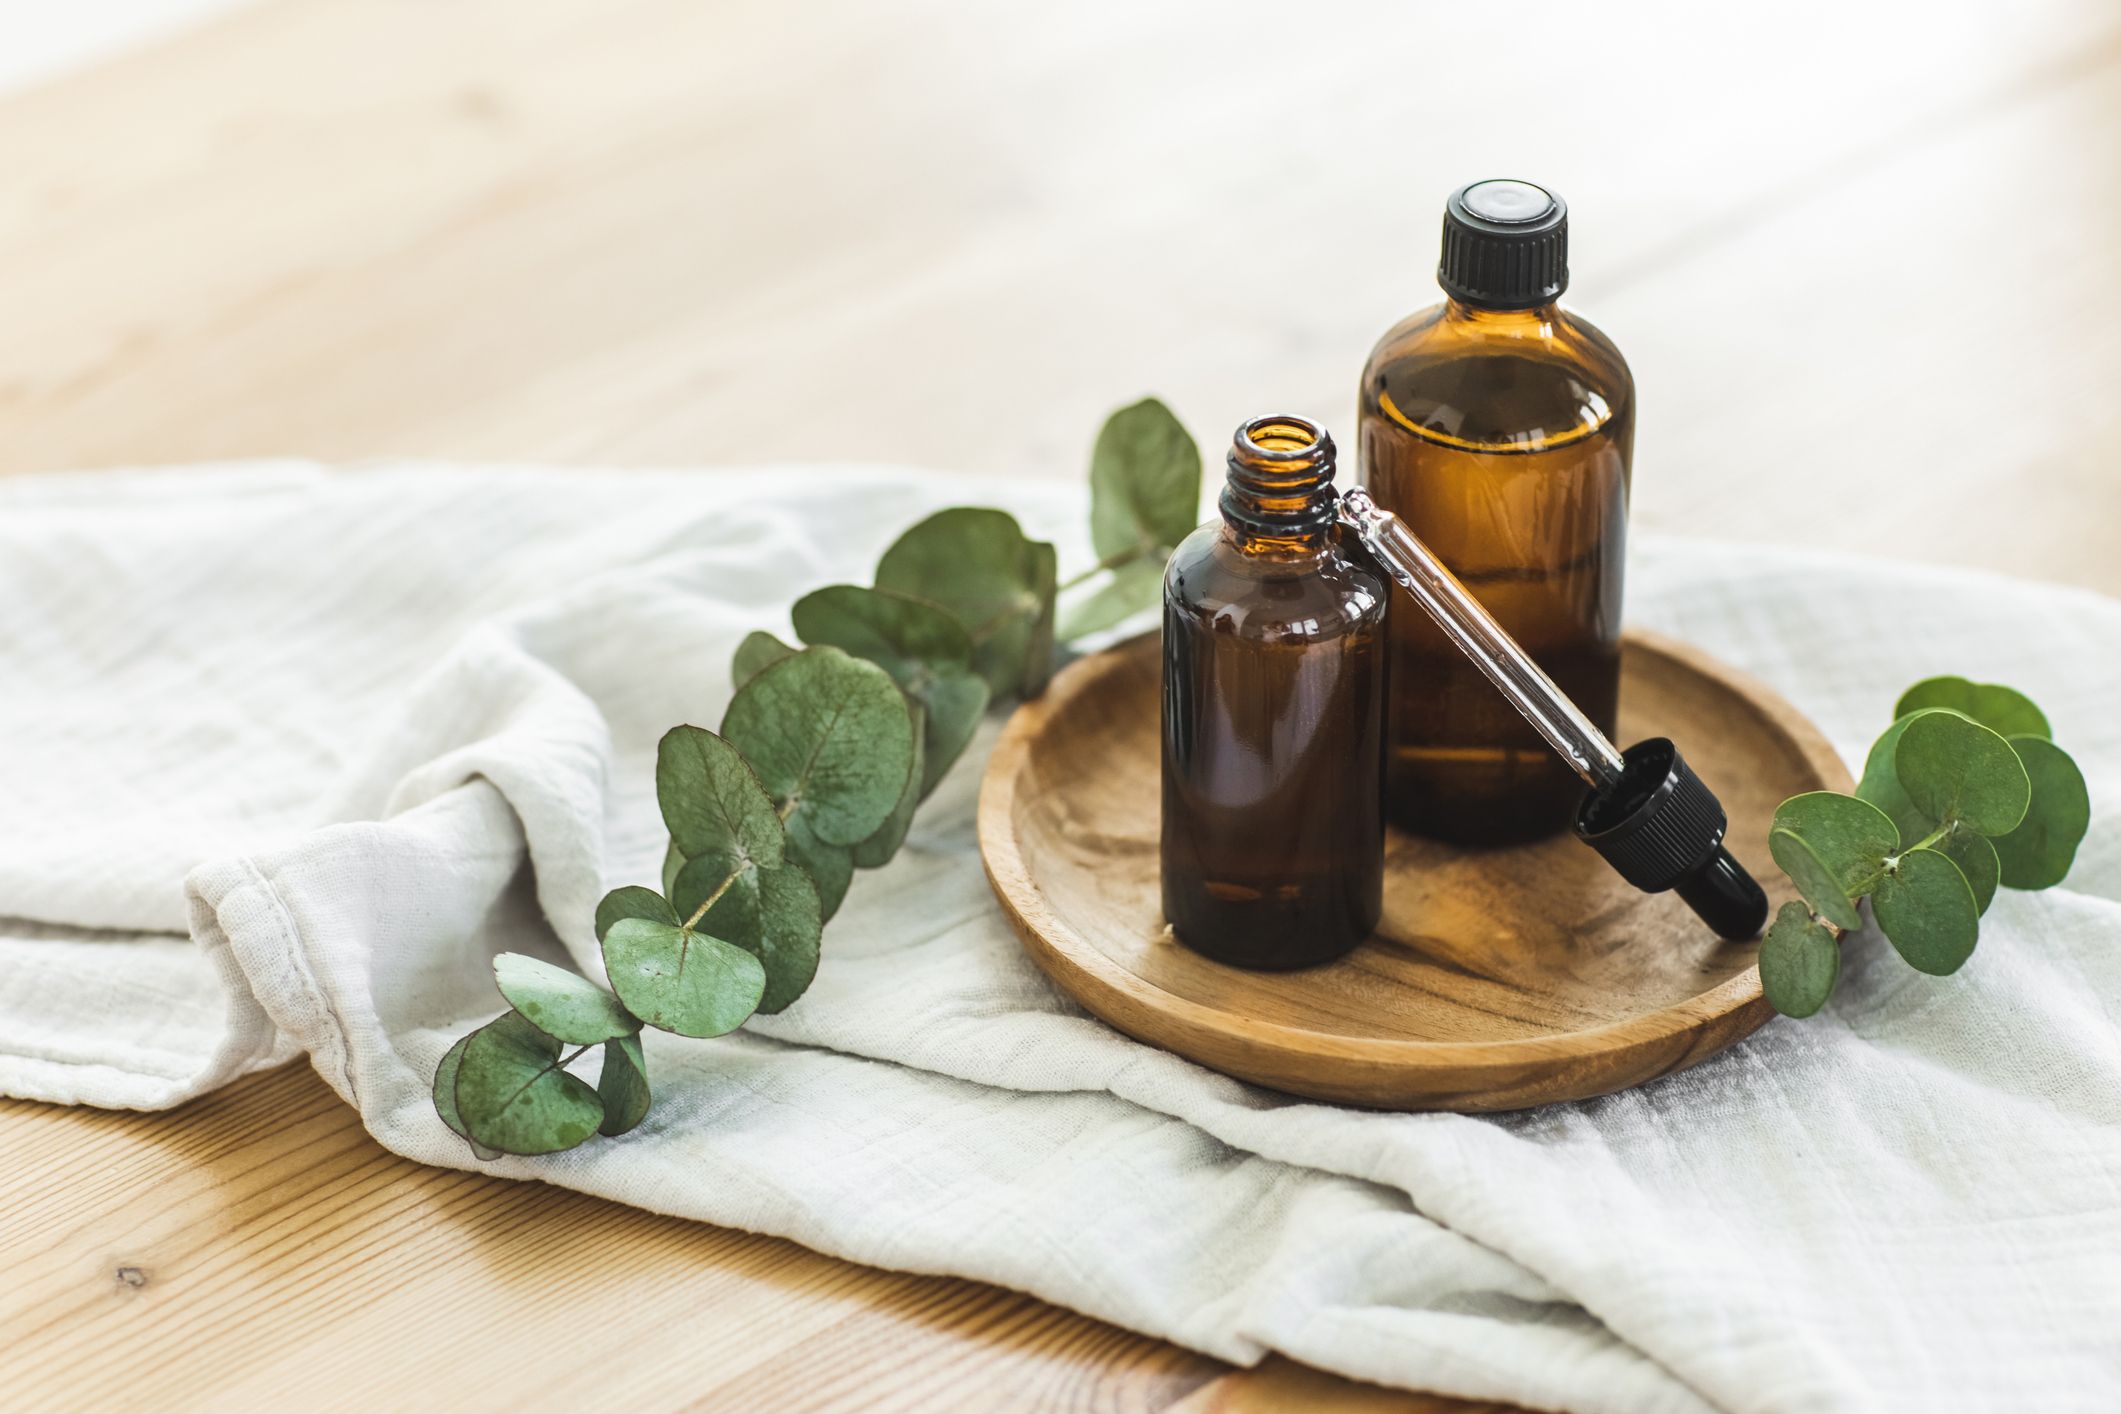 Vendita online diffusori per oli essenziali e aromaterapia ad